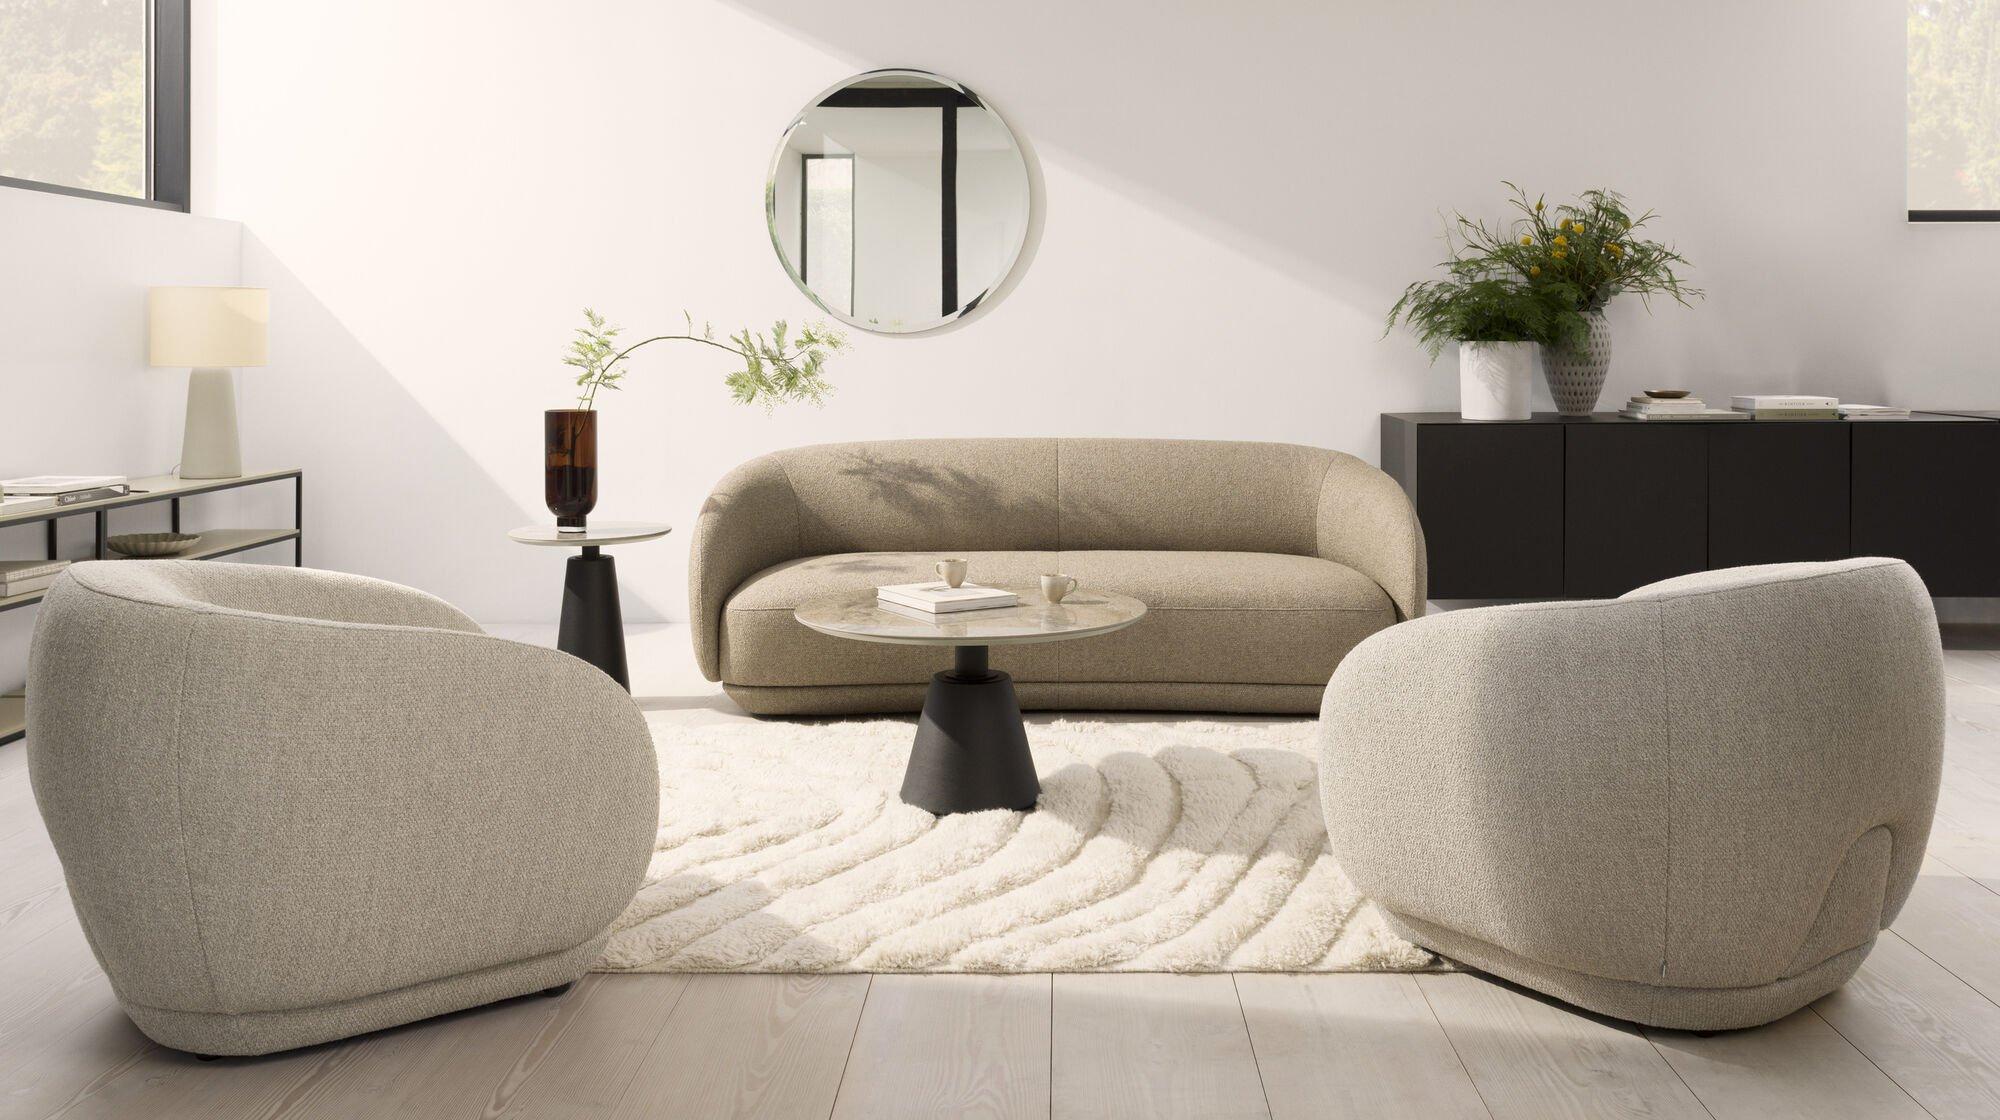 Moderná obývačka so sedačkou Bolzano v hnedej látke Lazio.